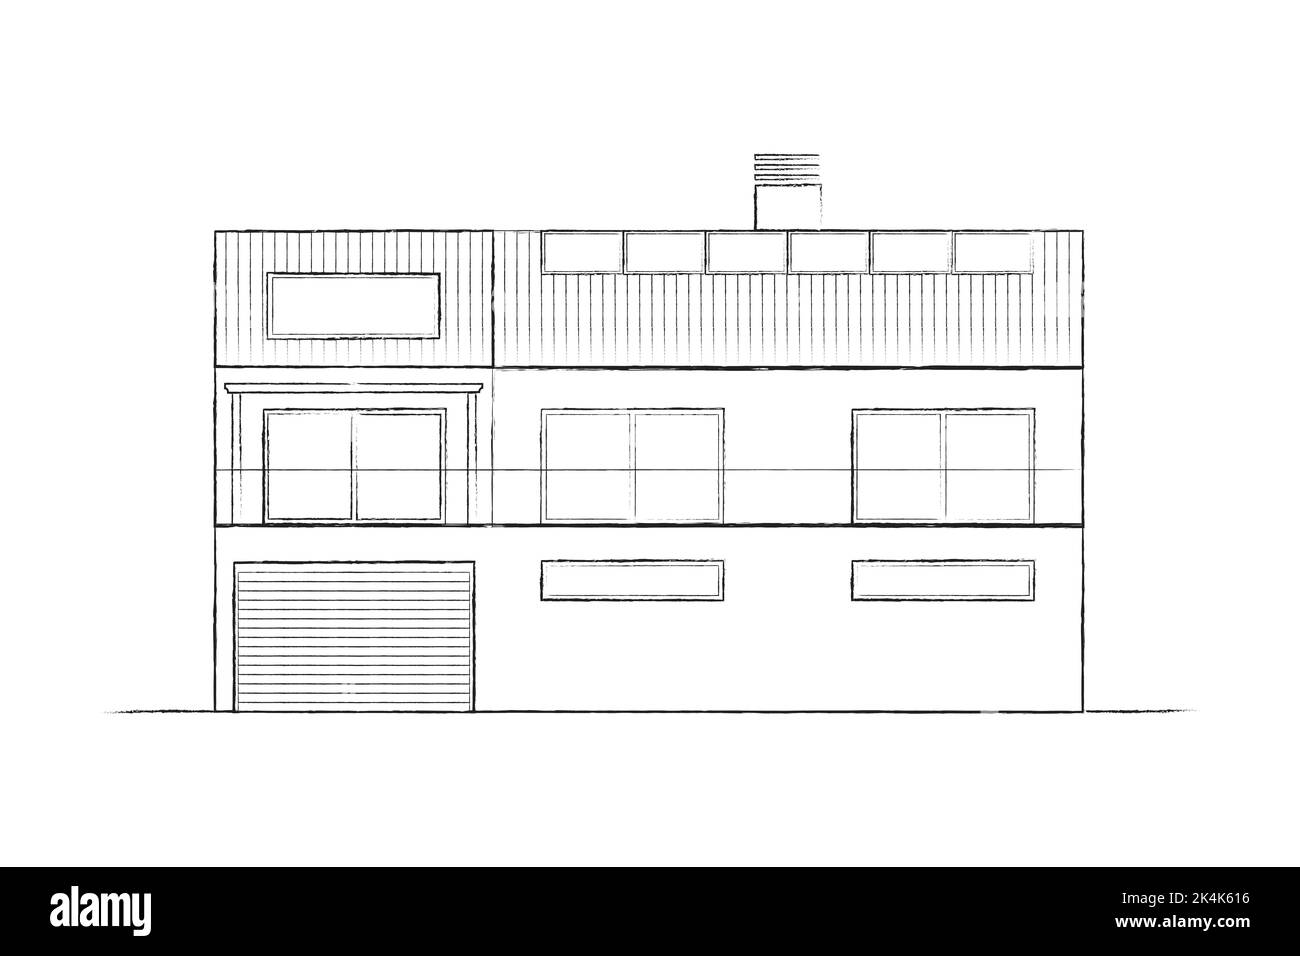 Disegno di architettura Vista frontale di un edificio con facciata. Pianta architettonica di una casa moderna. Illustrazione vettoriale Illustrazione Vettoriale